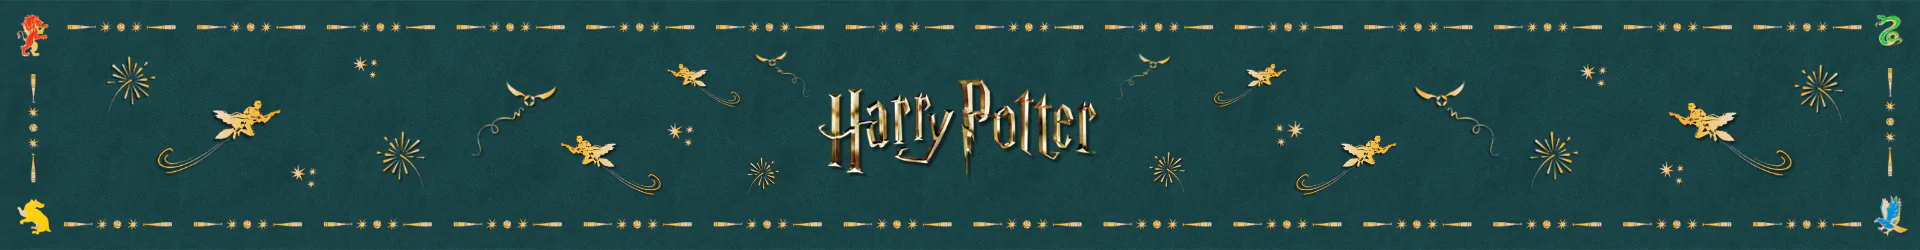 Harry Potter Produkte banner